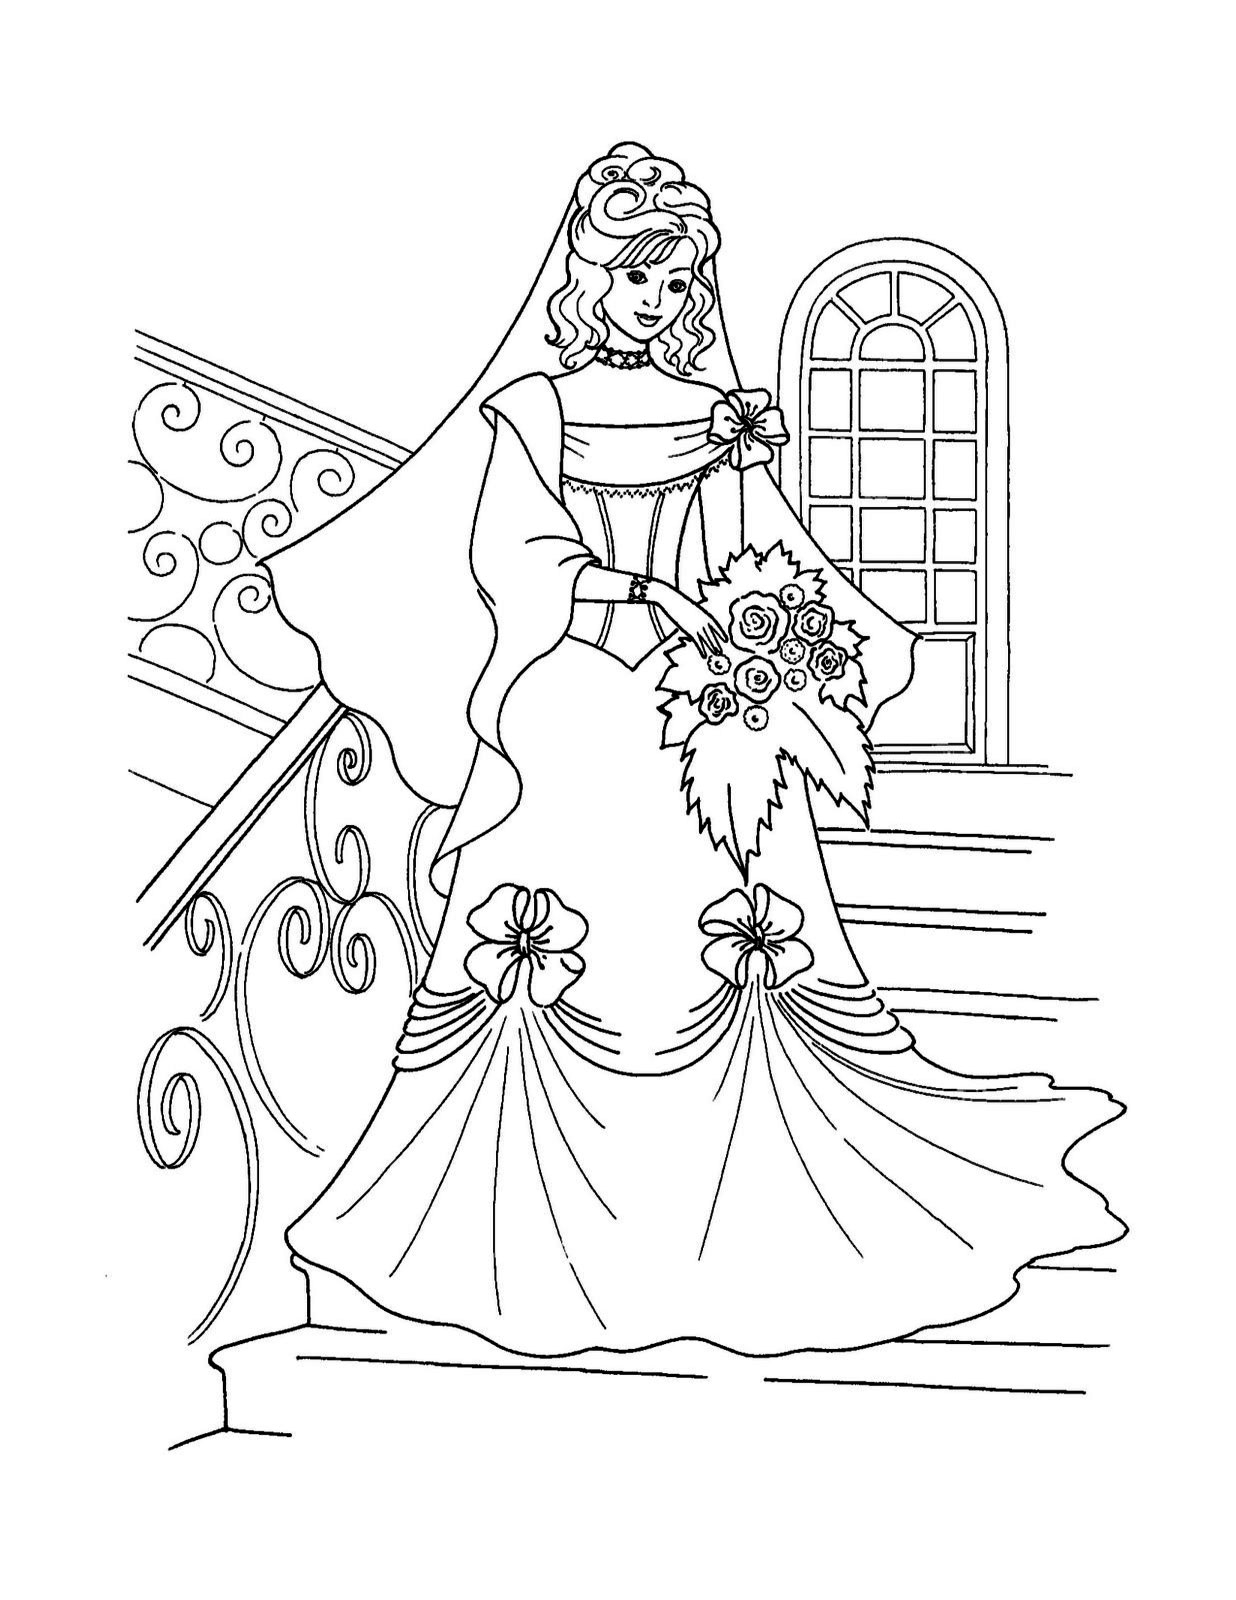 Раскраска - Длинное платье невесты